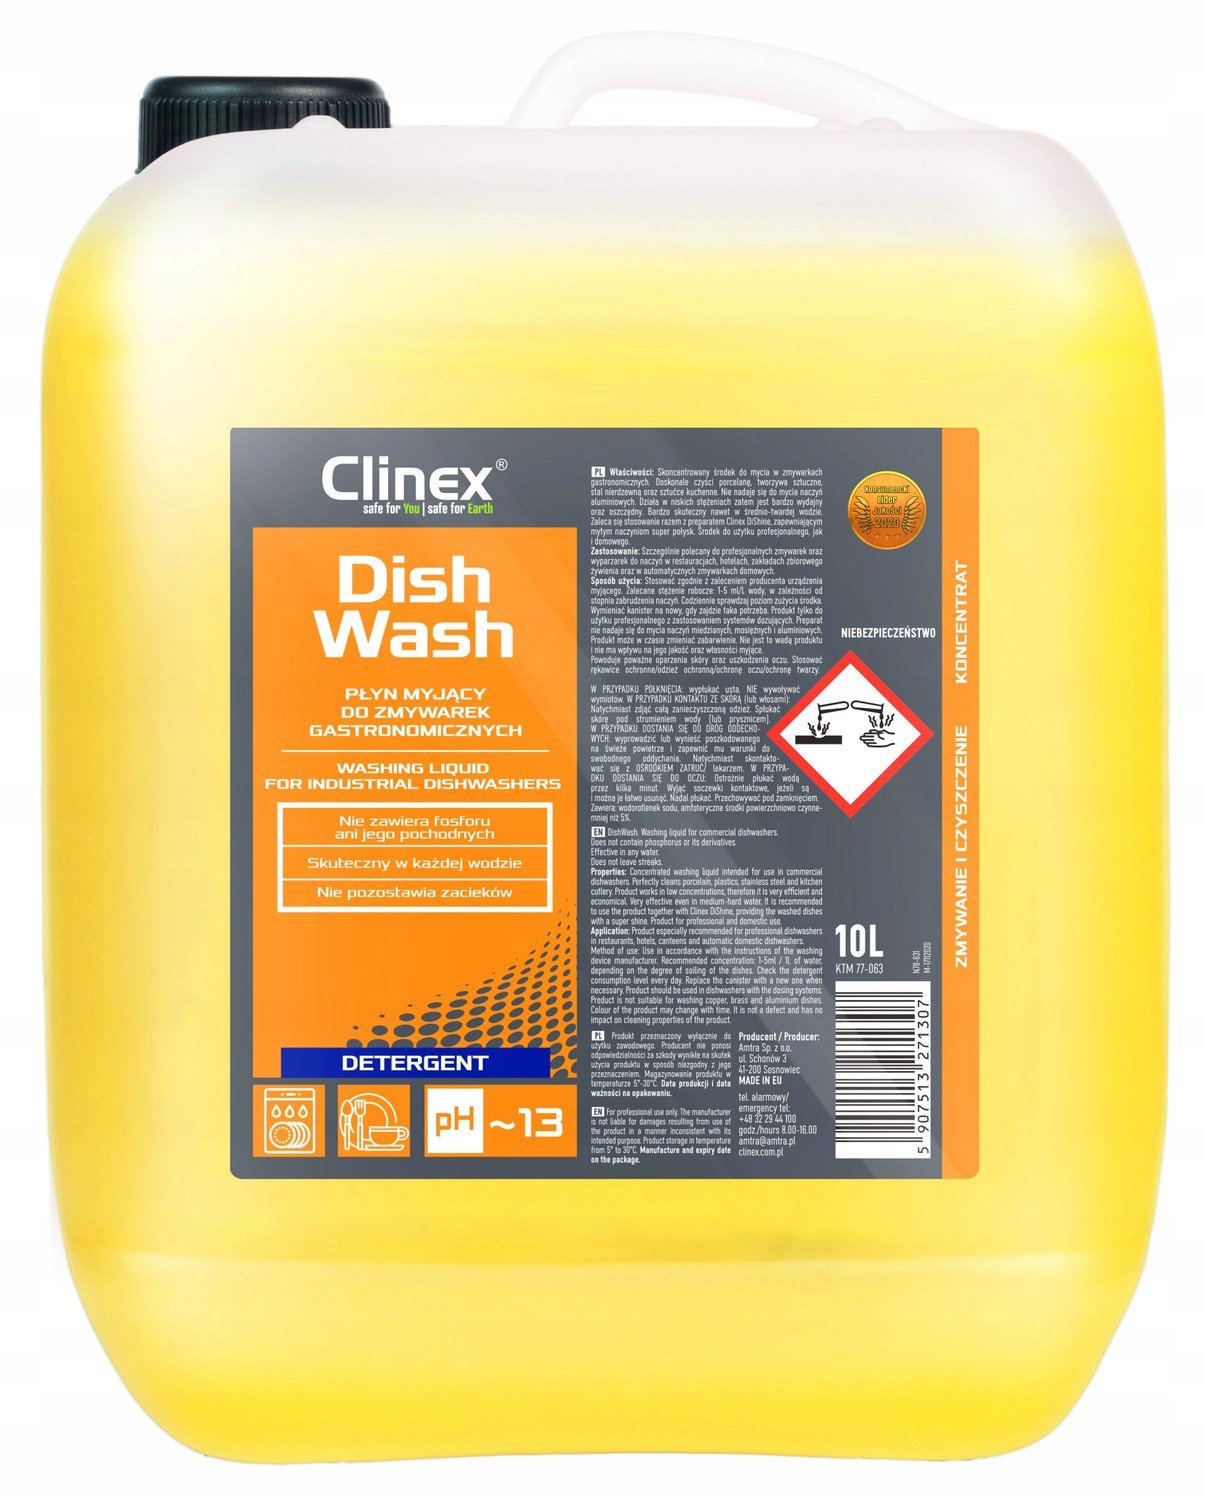 Clinex DishWash Mycí prostředek do myčky 10L